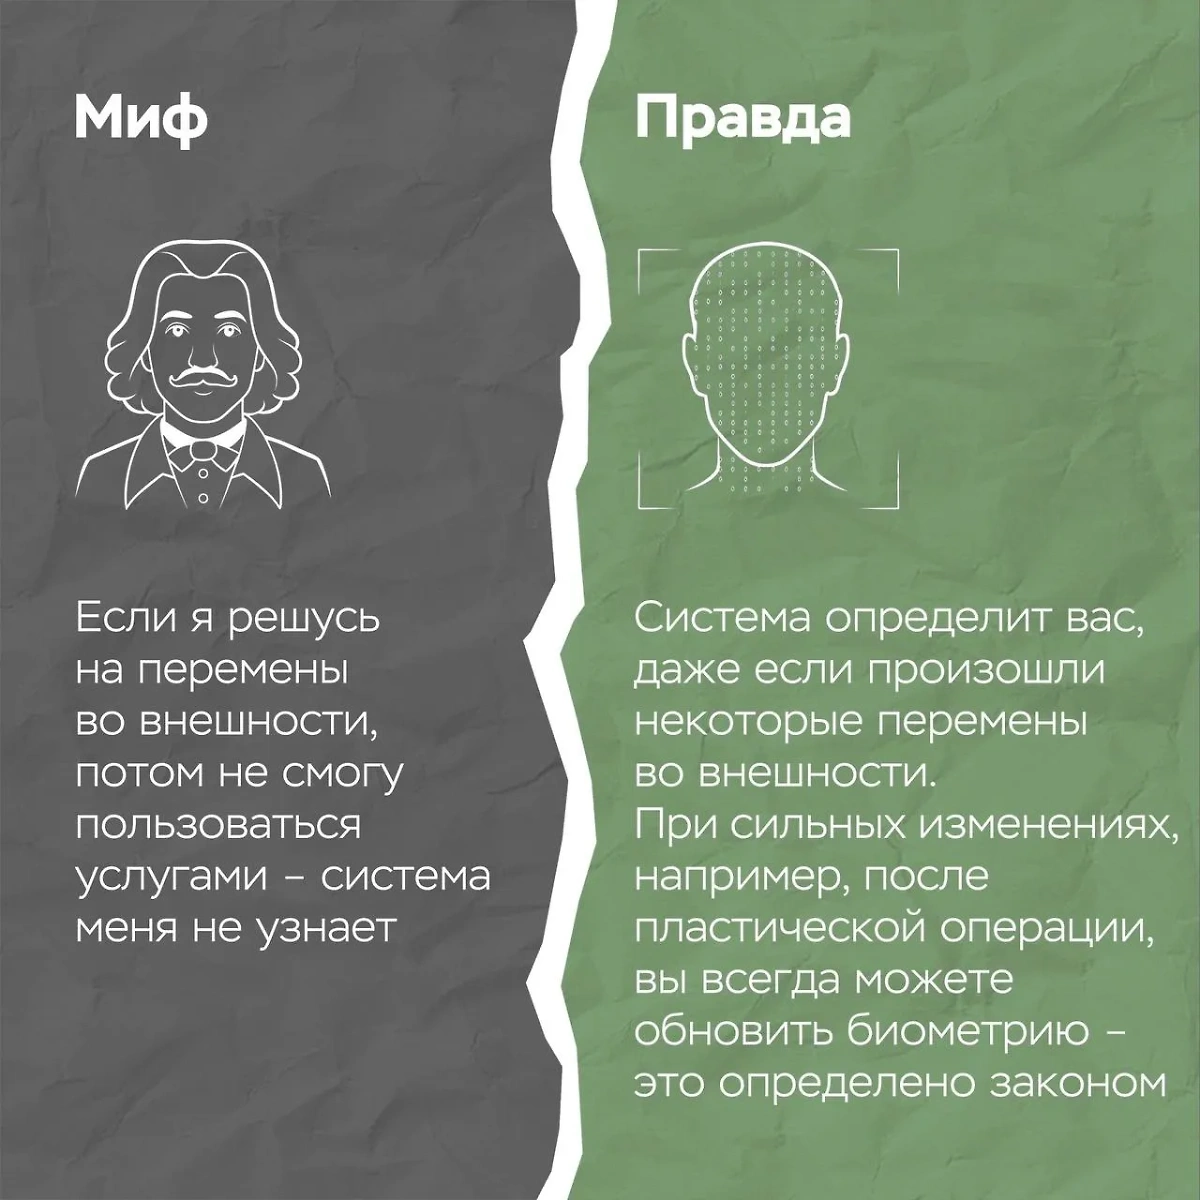 Миф № 3: Система не учитывает изменения во внешности. Фото © По информации ГУ Банка России по ЦФО